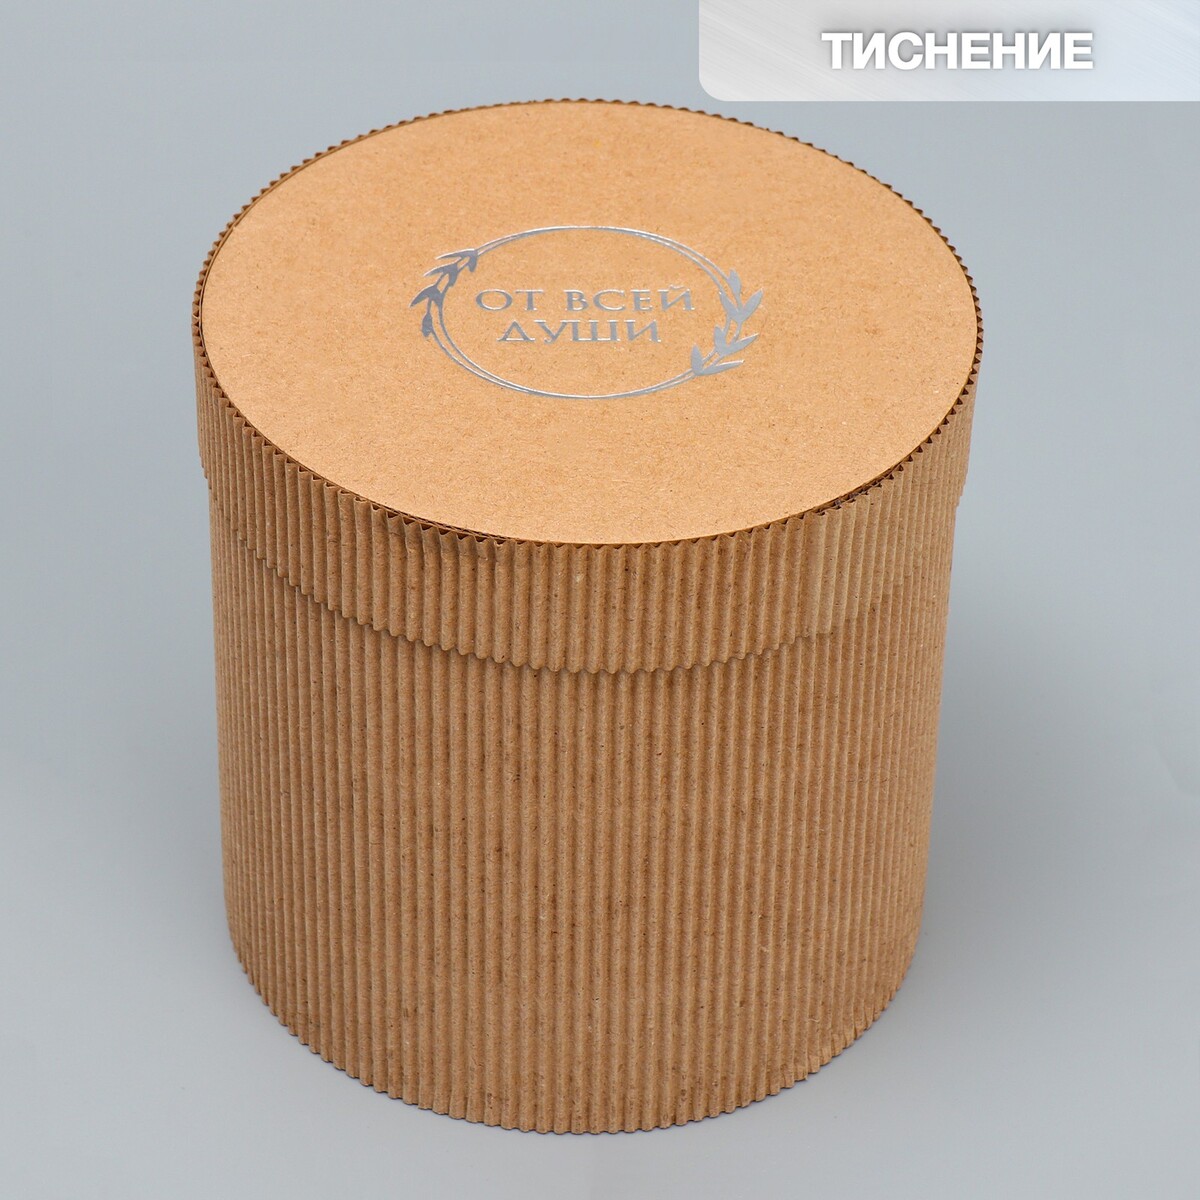 Коробка подарочная шляпная из микрогофры, упаковка, шляпная коробка сирень 13 х 13 см